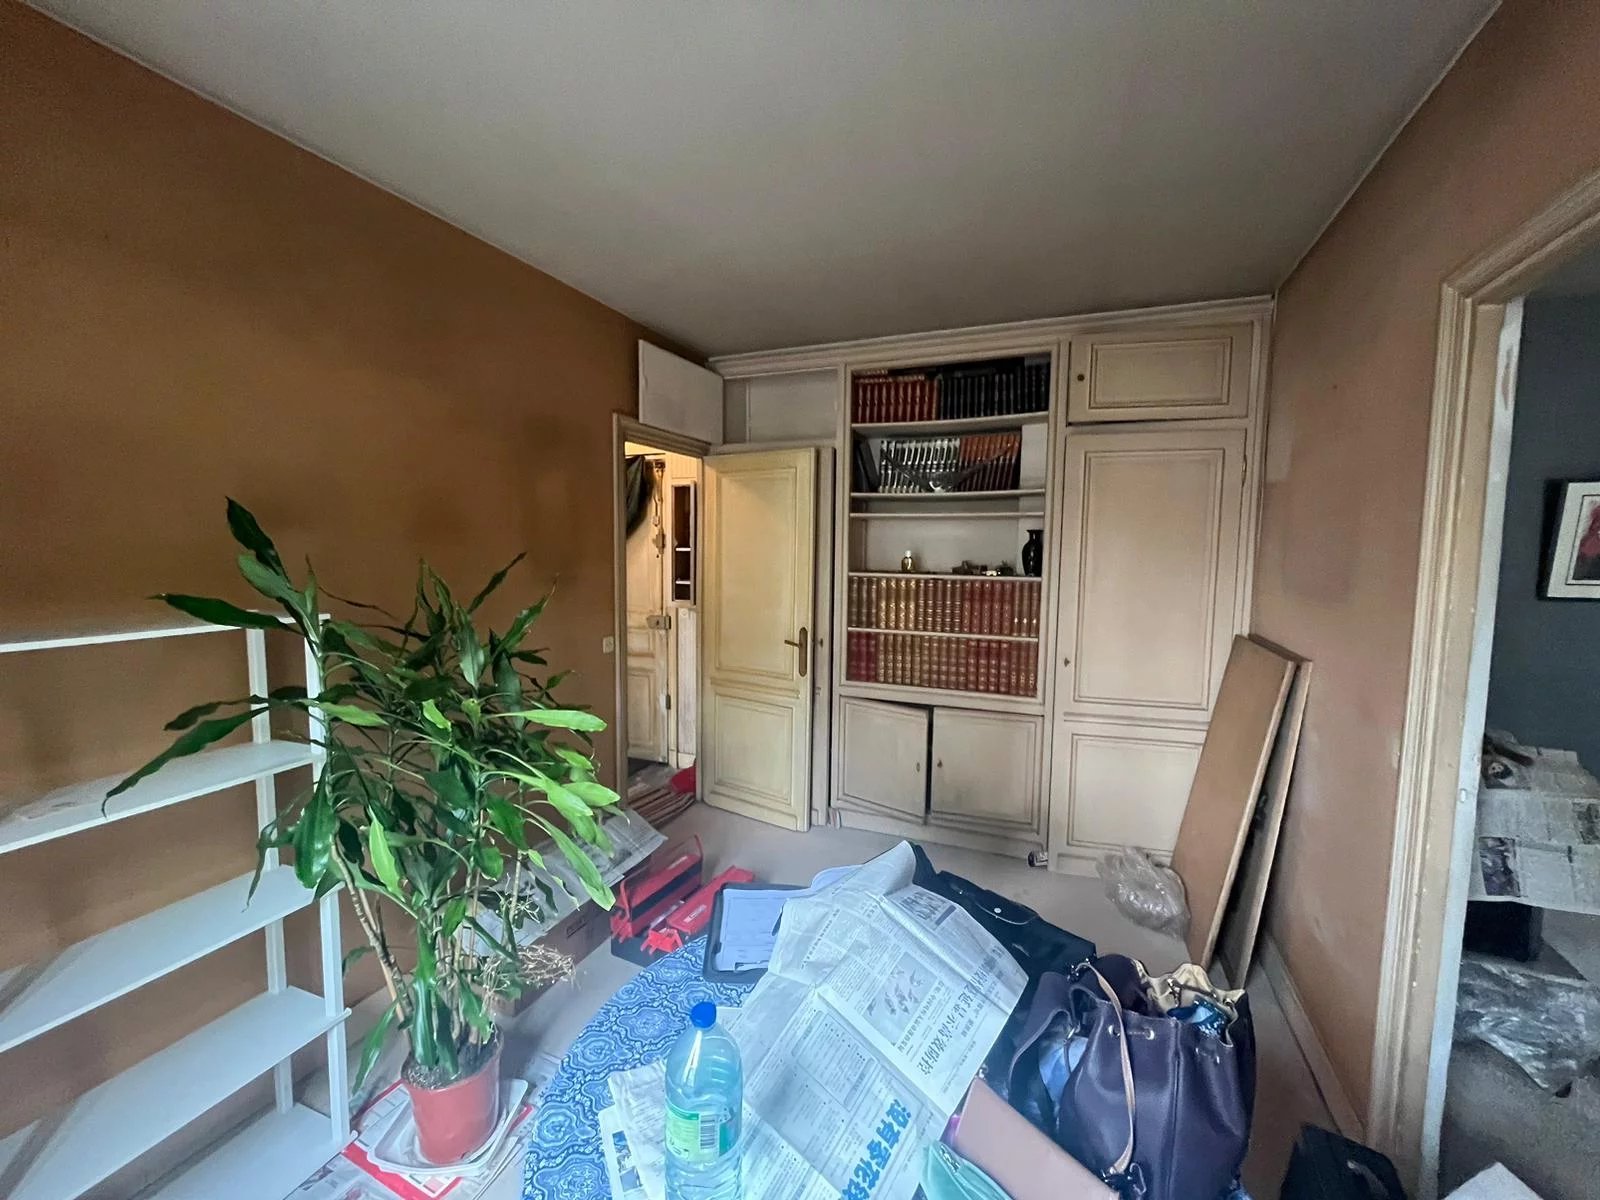 Sale Apartment - Boulogne-Billancourt